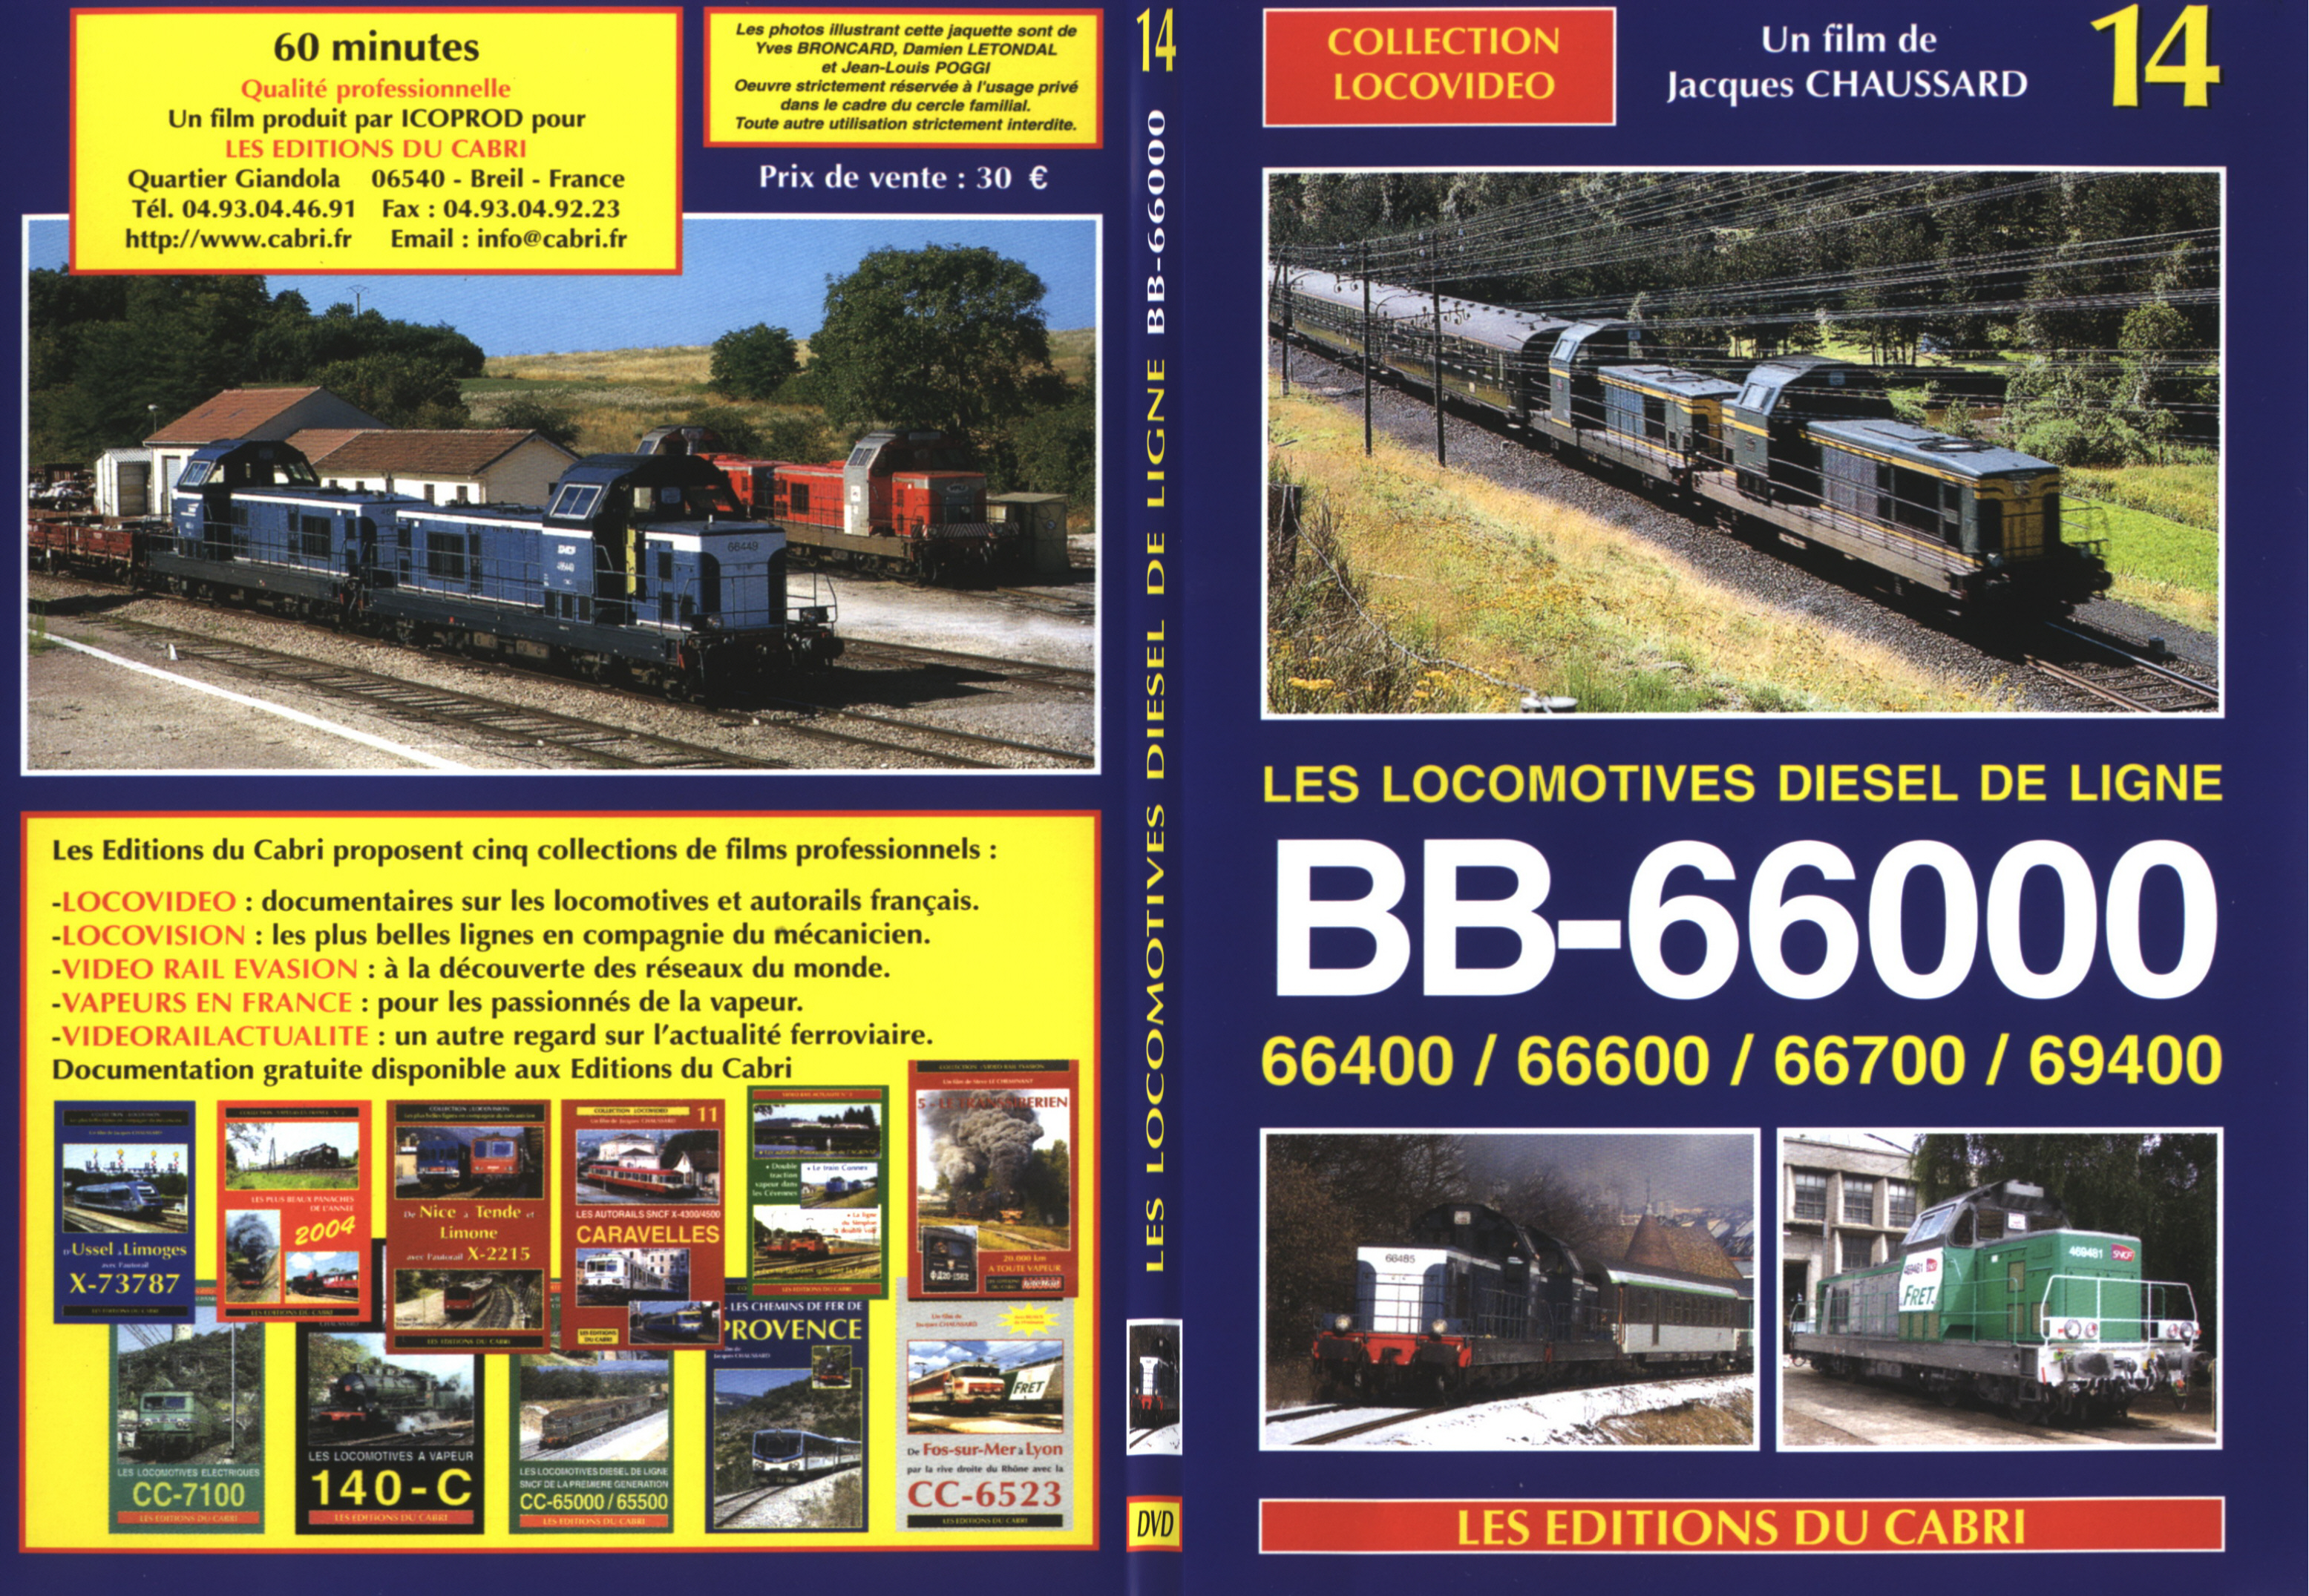 Jaquette DVD Les locomotives diesel de ligne BB 66000 - SLIM